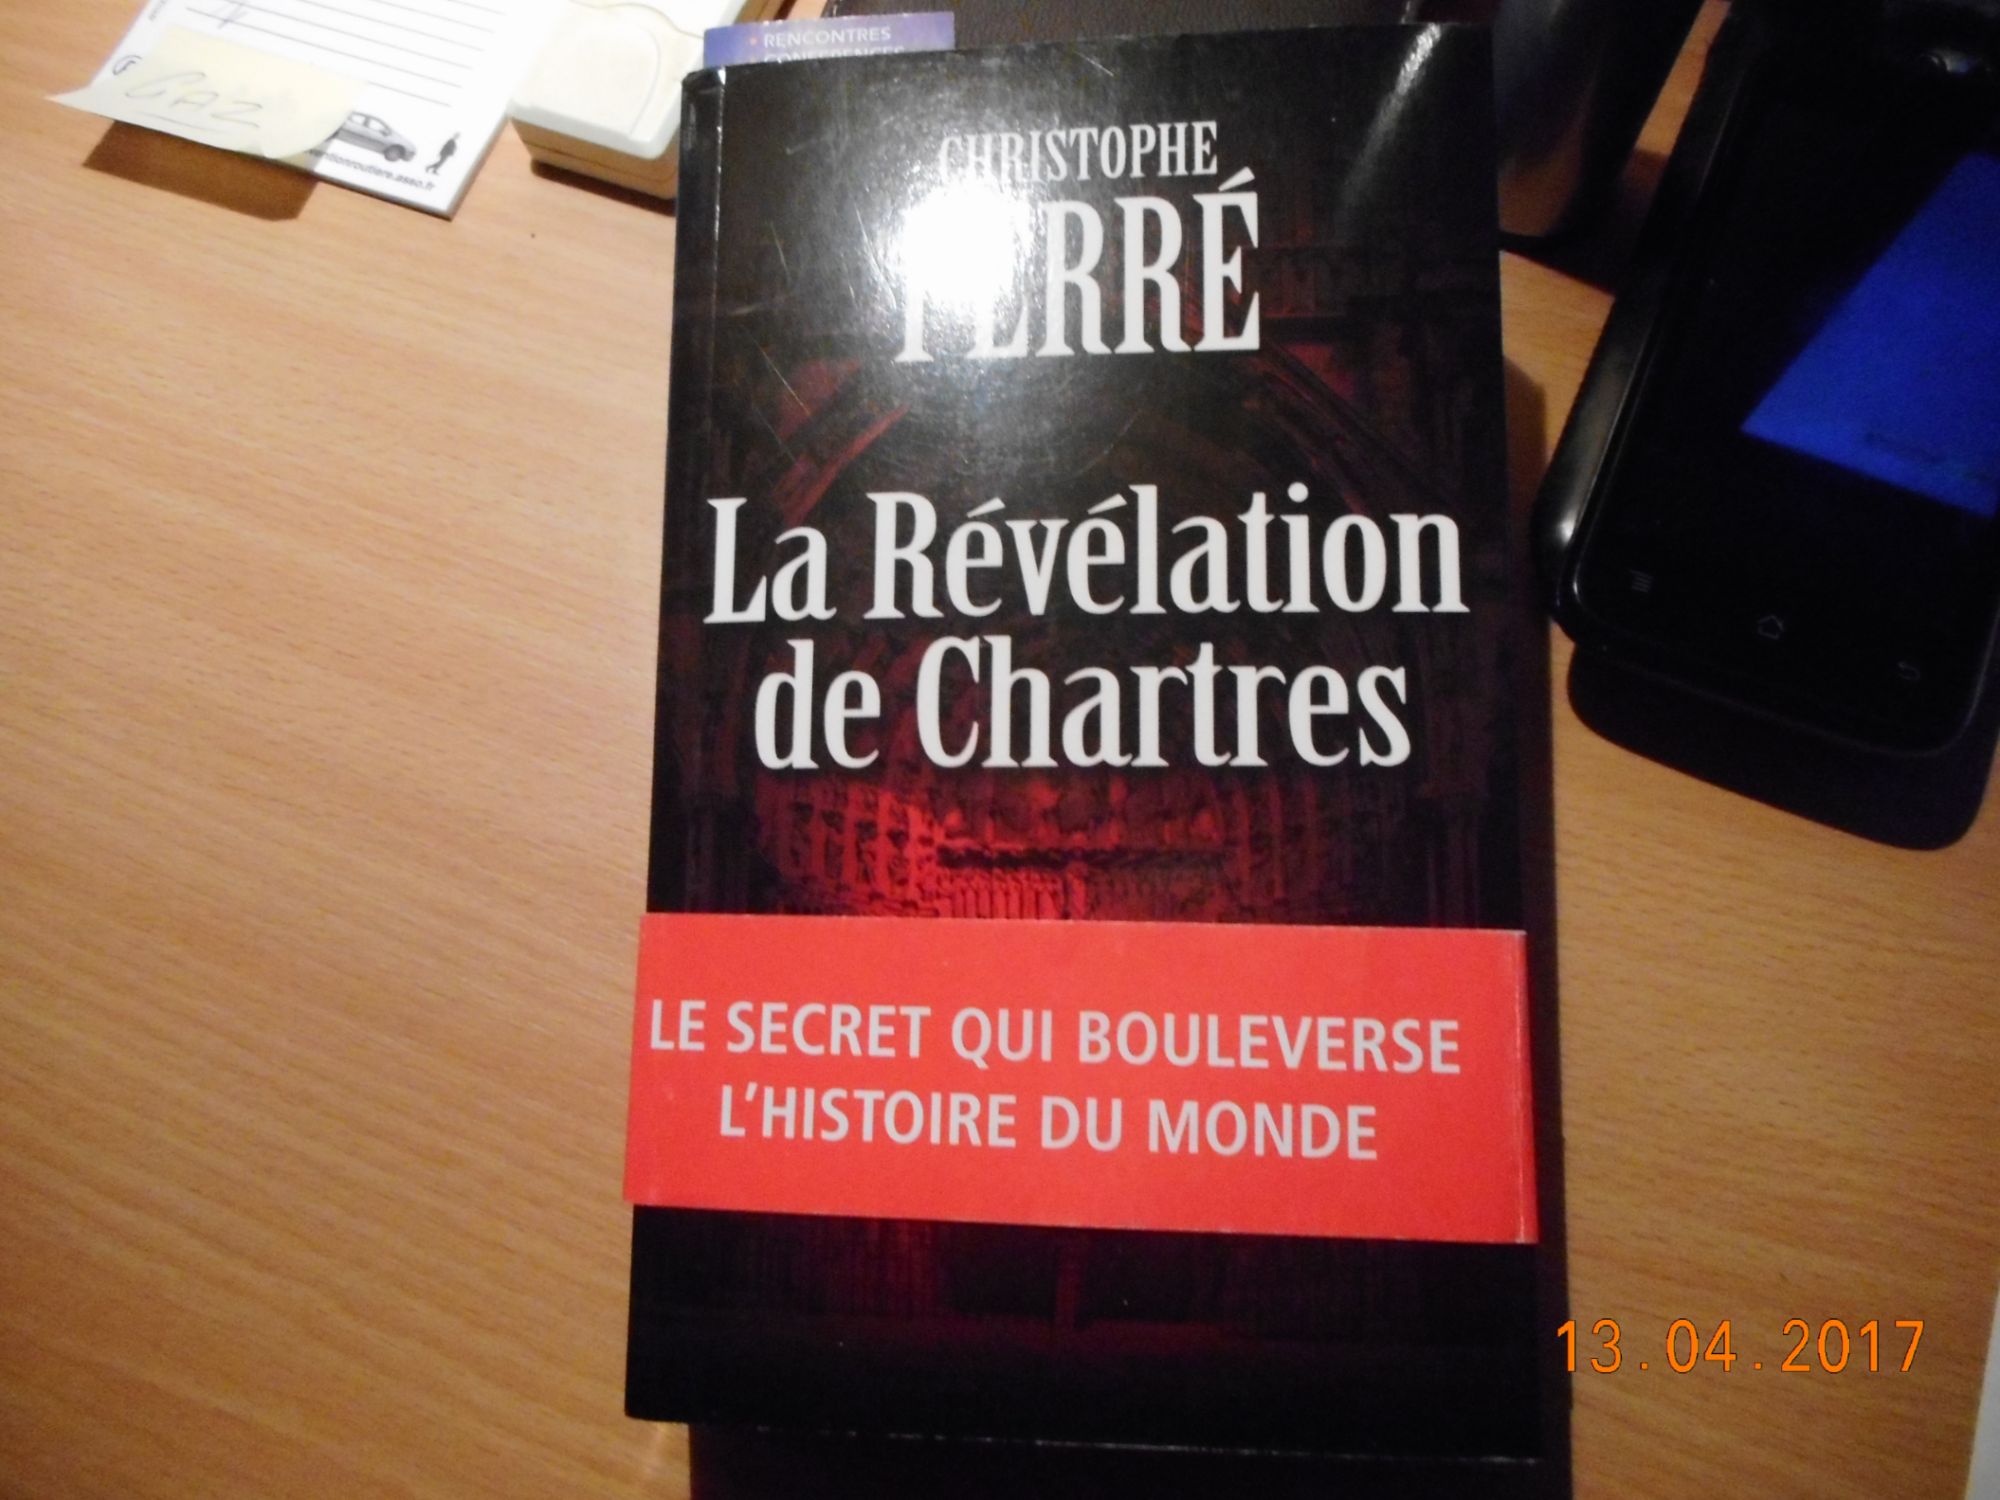 La Révélation de Chartres